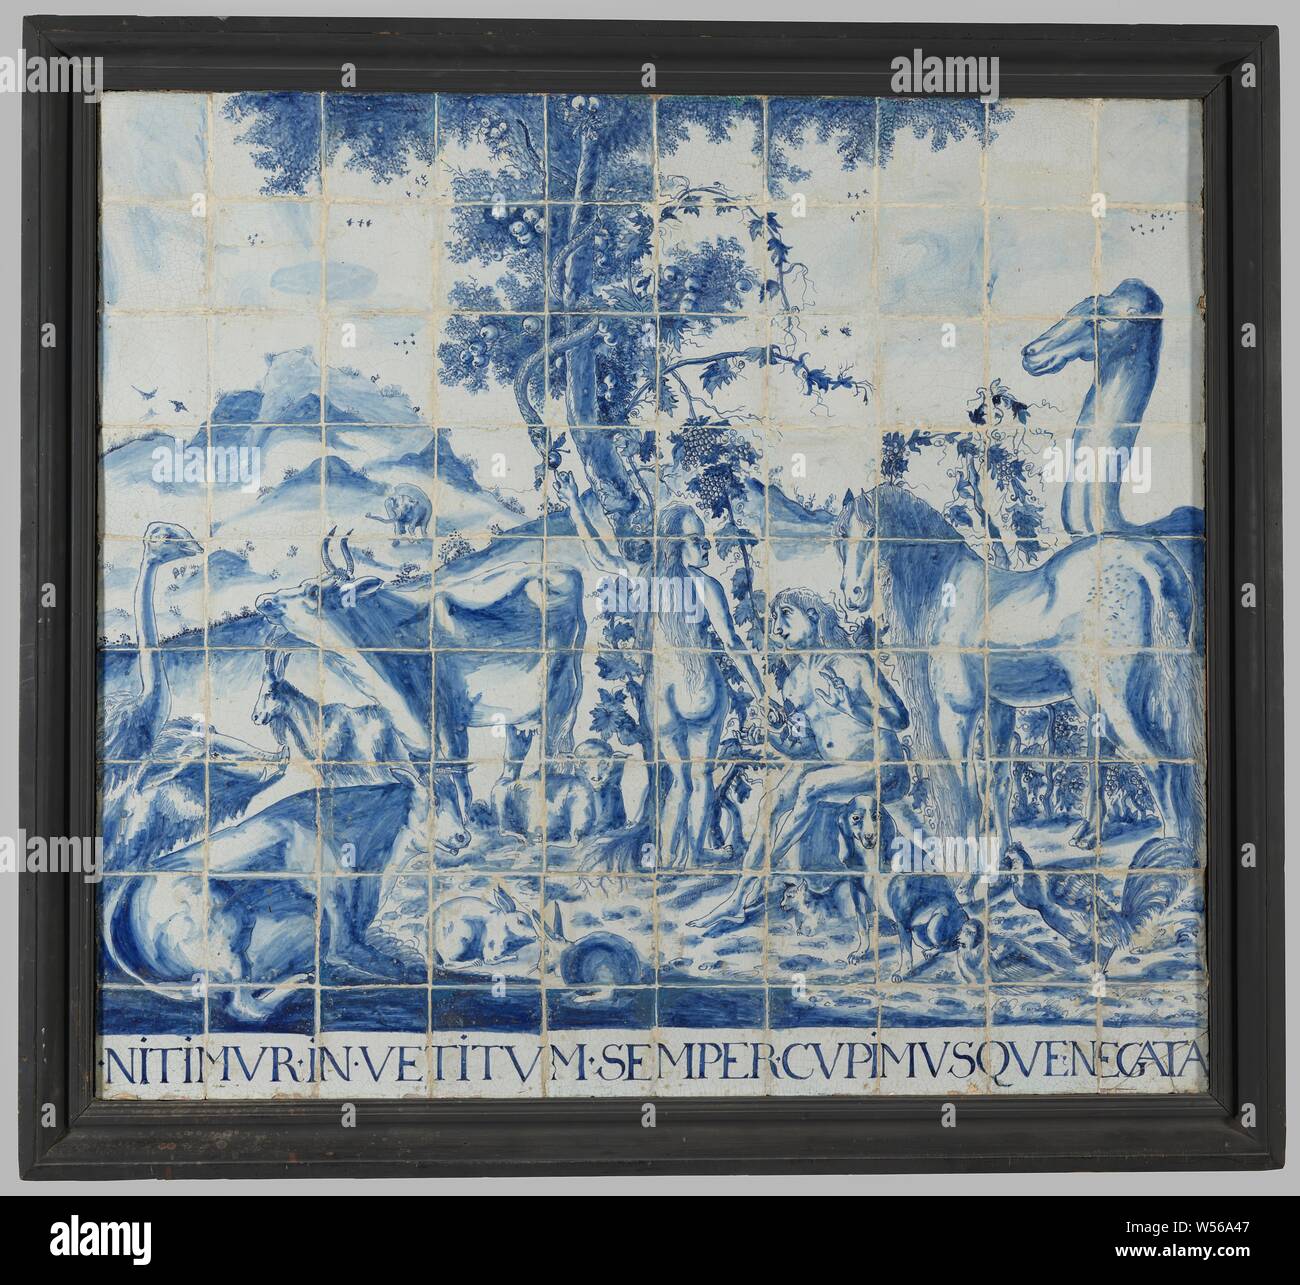 Pannello di piastrelle di 90 tessere, pannello di piastrelle di 90 tessere (9 x 10) con un blu dipinto di rappresentazione biblica di Adamo ed Eva circondato dagli animali con la struttura ad albero con il serpente nel mezzo. Al di sotto della mostra, l'iscrizione: .NITIMVR.in.VETITVM.SEMPER.CVPIMVSQVENEGATA., anonimo, Olanda, 1650 - 1680, terraglia, stagno smalto, h 131 cm × w 144.5 cm × d 7 Foto Stock